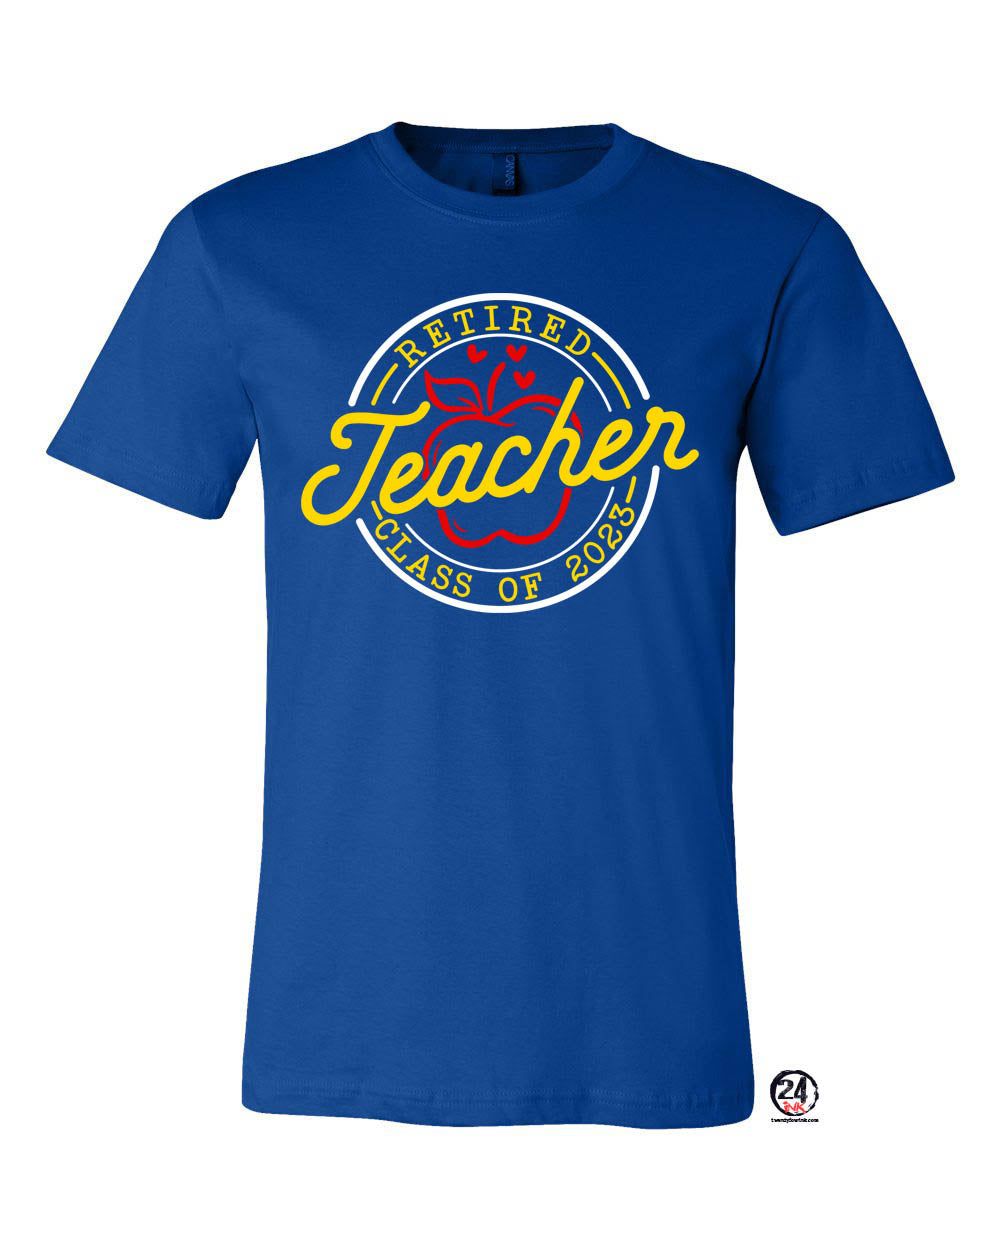 Retired Teacher T-Shirt